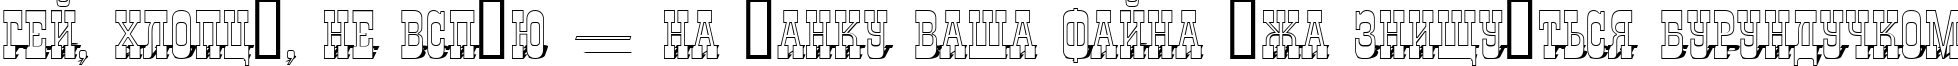 Пример написания шрифтом a_GildiaTitul3DSh текста на украинском